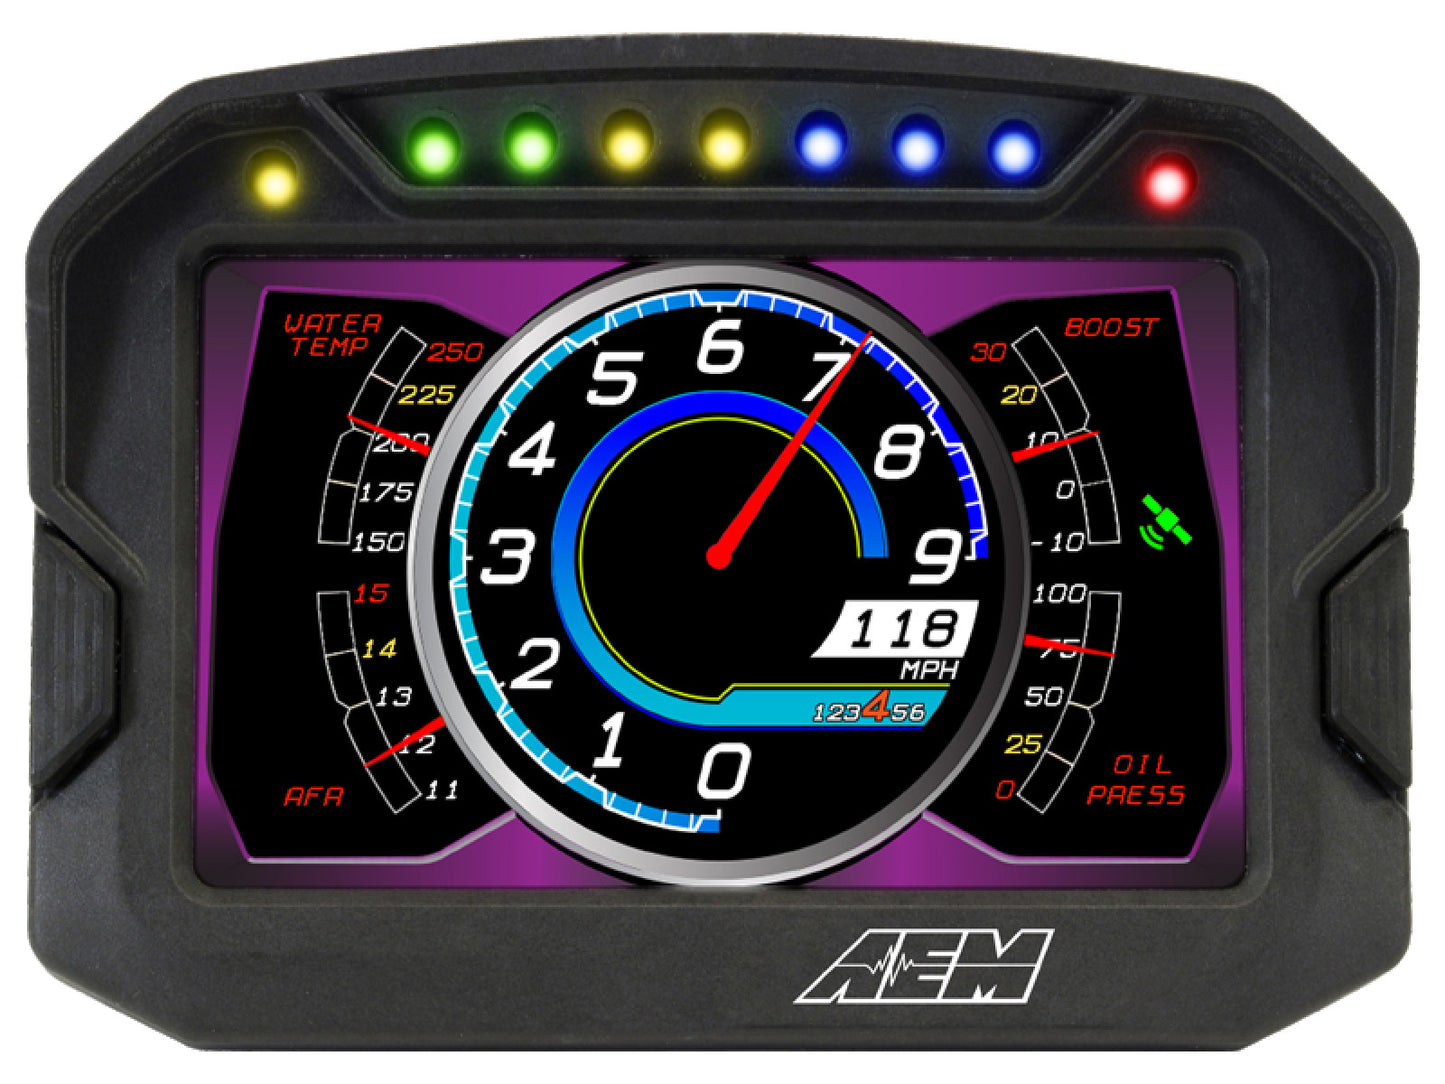 AEM CD-5 Carbon Digital Racing Logging Dash Display 30-5601